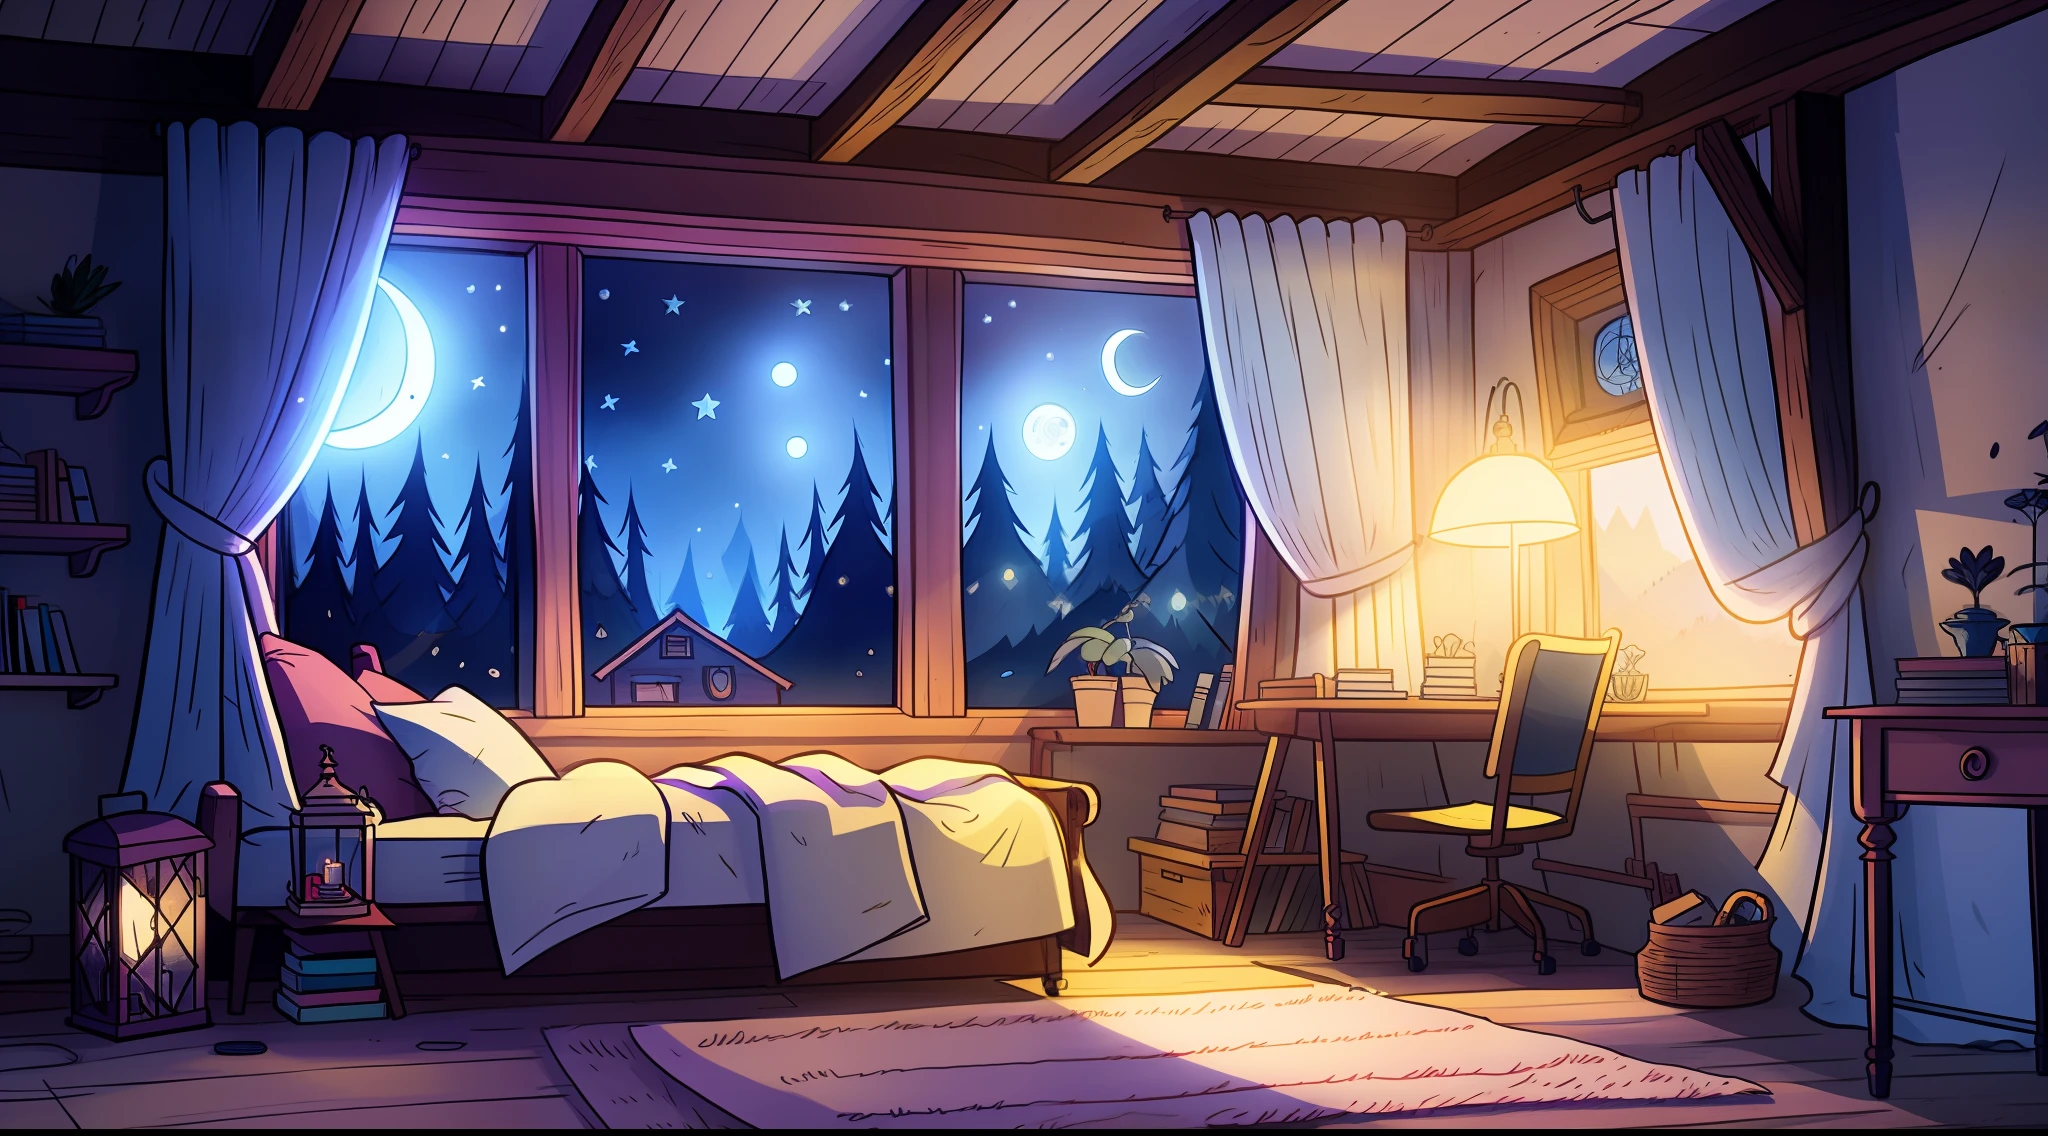 уютная комната ночью, лунный свет светит в окно, подробная иллюстрация, мультфильм, не в стиле гравитифолза,взрослый короткий